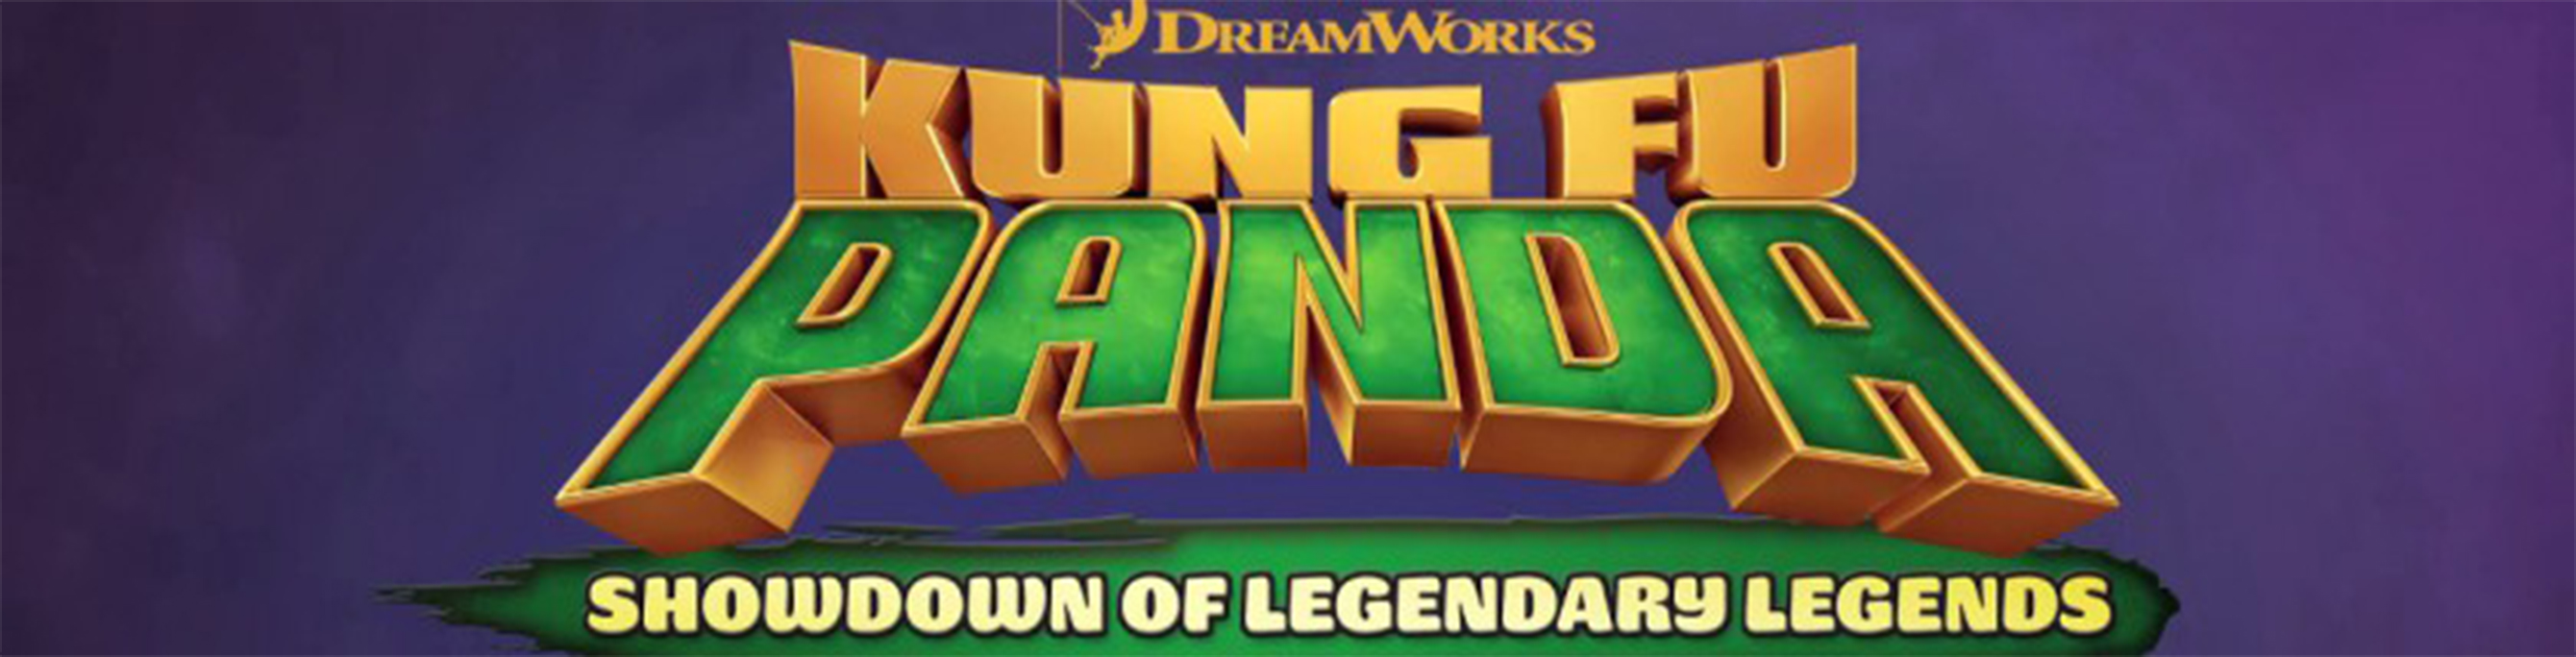 دانلود بازی کامپیوتر Kung Fu Panda Showdown of Legendary Legends